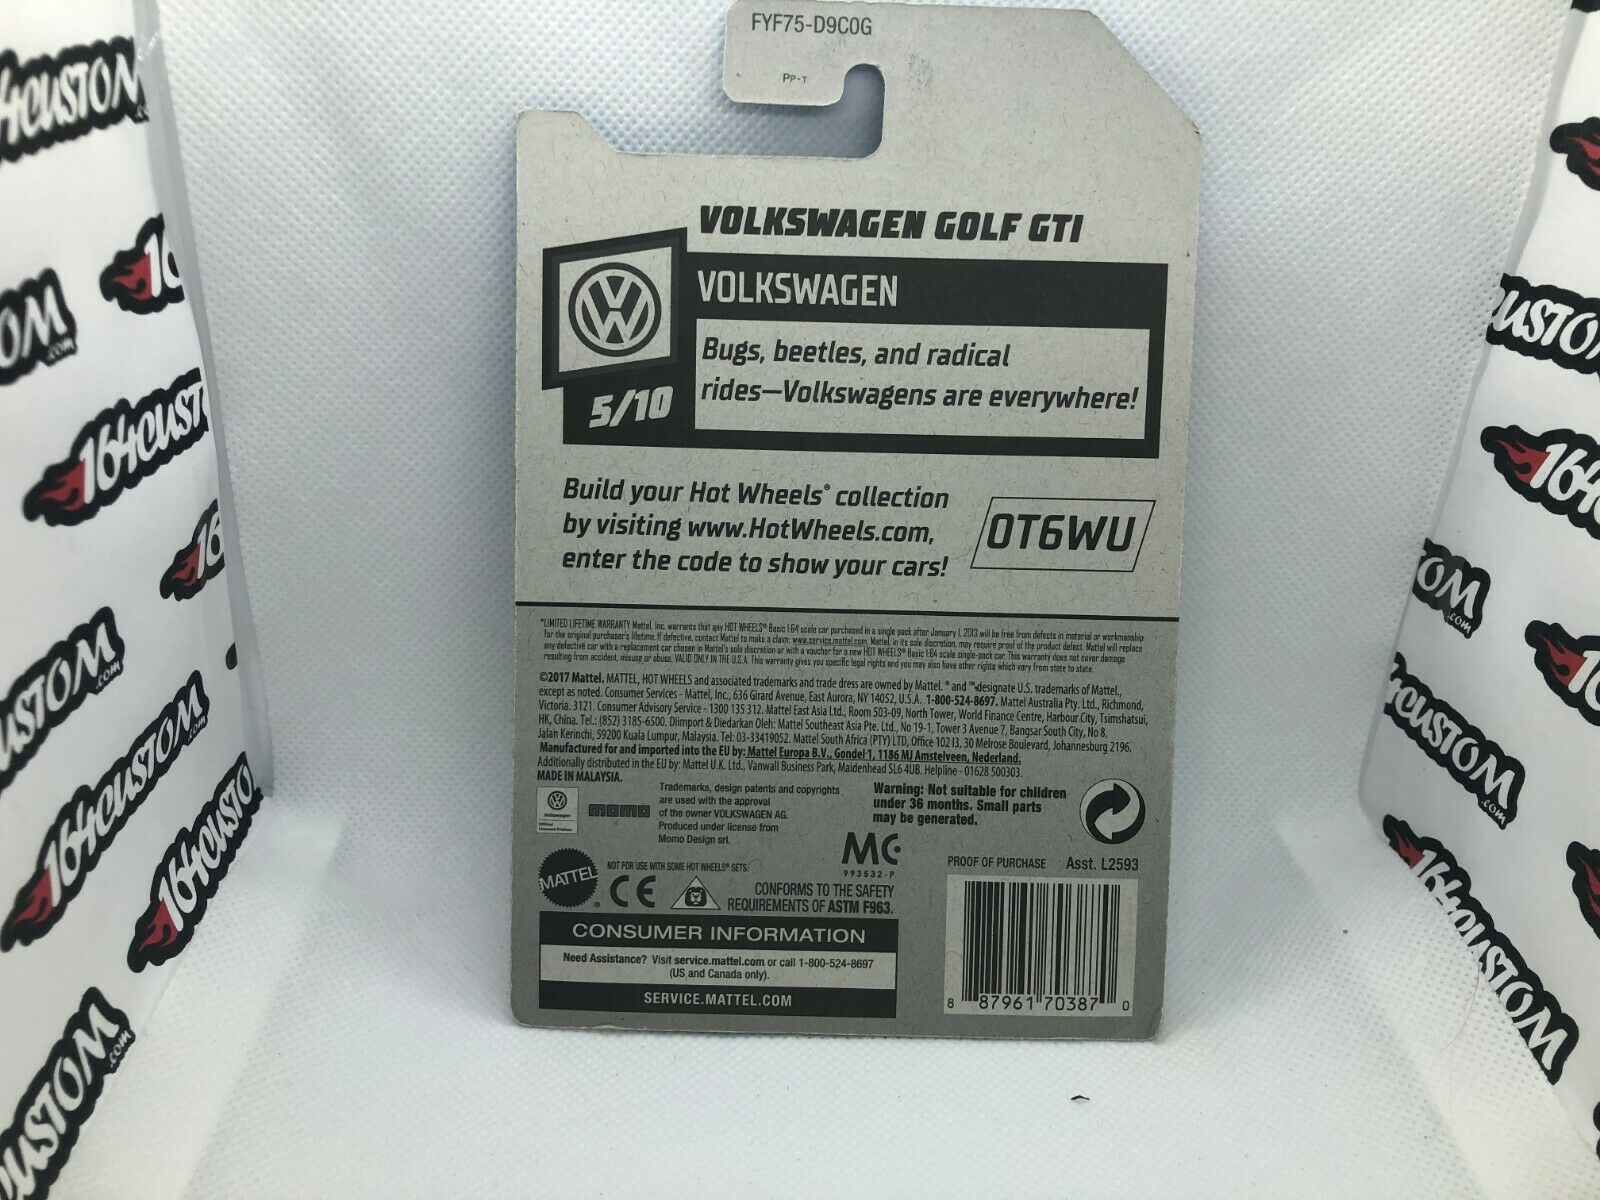 Volkswagen Golf GTI Hot Wheels